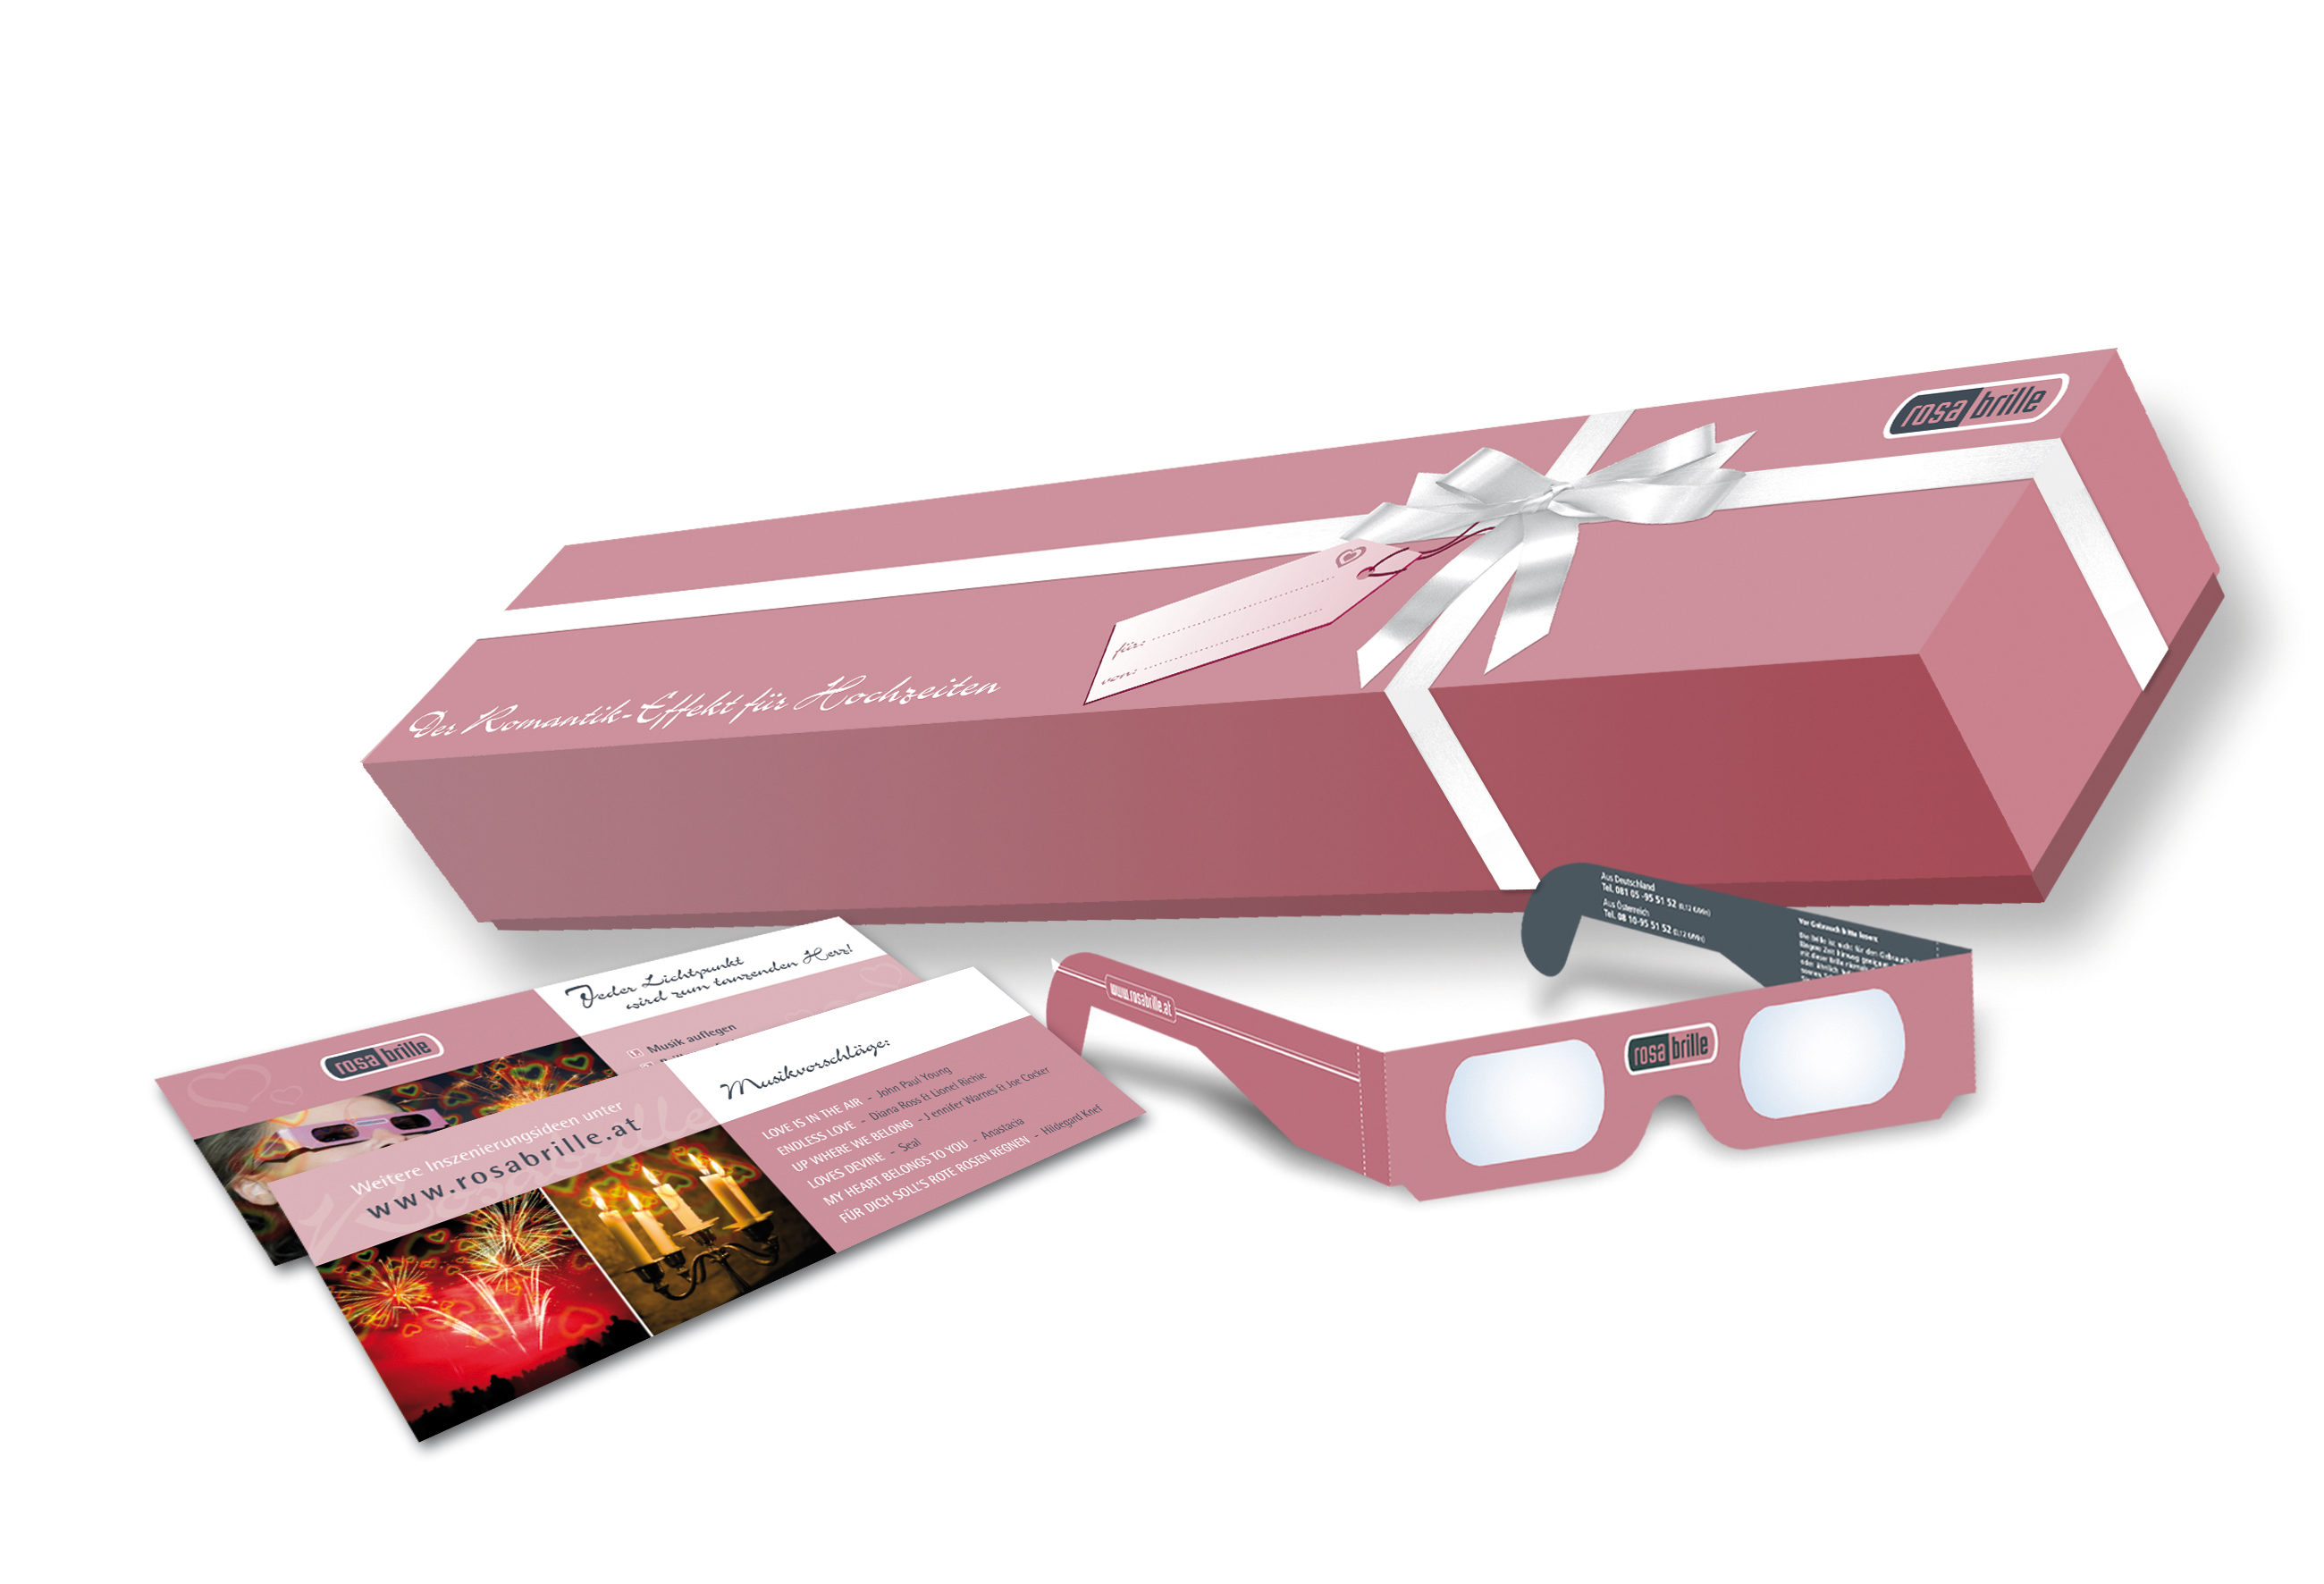 Die Rosabrille-Weddingbox kommt als schöne Geschenkverpackung daher, in der sich nicht nur die Rosabrillen befinden, sondern auch Wunderkerzen in gleicher Zahl sowie einige Musikempfehlungen.